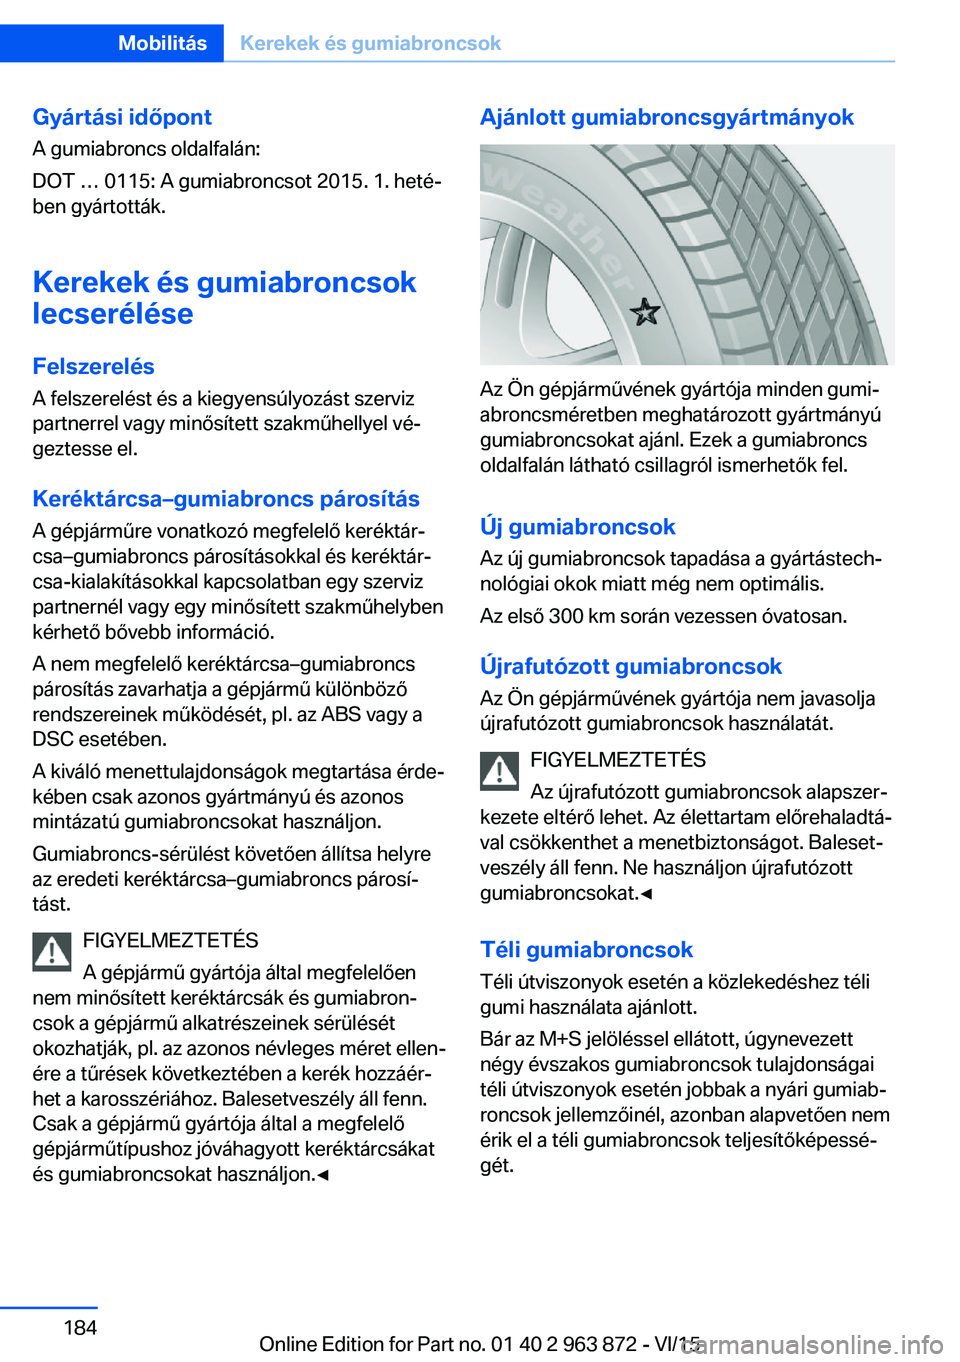 BMW 2 SERIES COUPE 2016  Kezelési útmutató (in Hungarian) Gyártási időpontA gumiabroncs oldalfalán:
DOT … 0115: A gumiabroncsot 2015. 1. heté‐
ben gyártották.
Kerekek és gumiabroncsok
lecserélése
Felszerelés
A felszerelést és a kiegyensúlyo